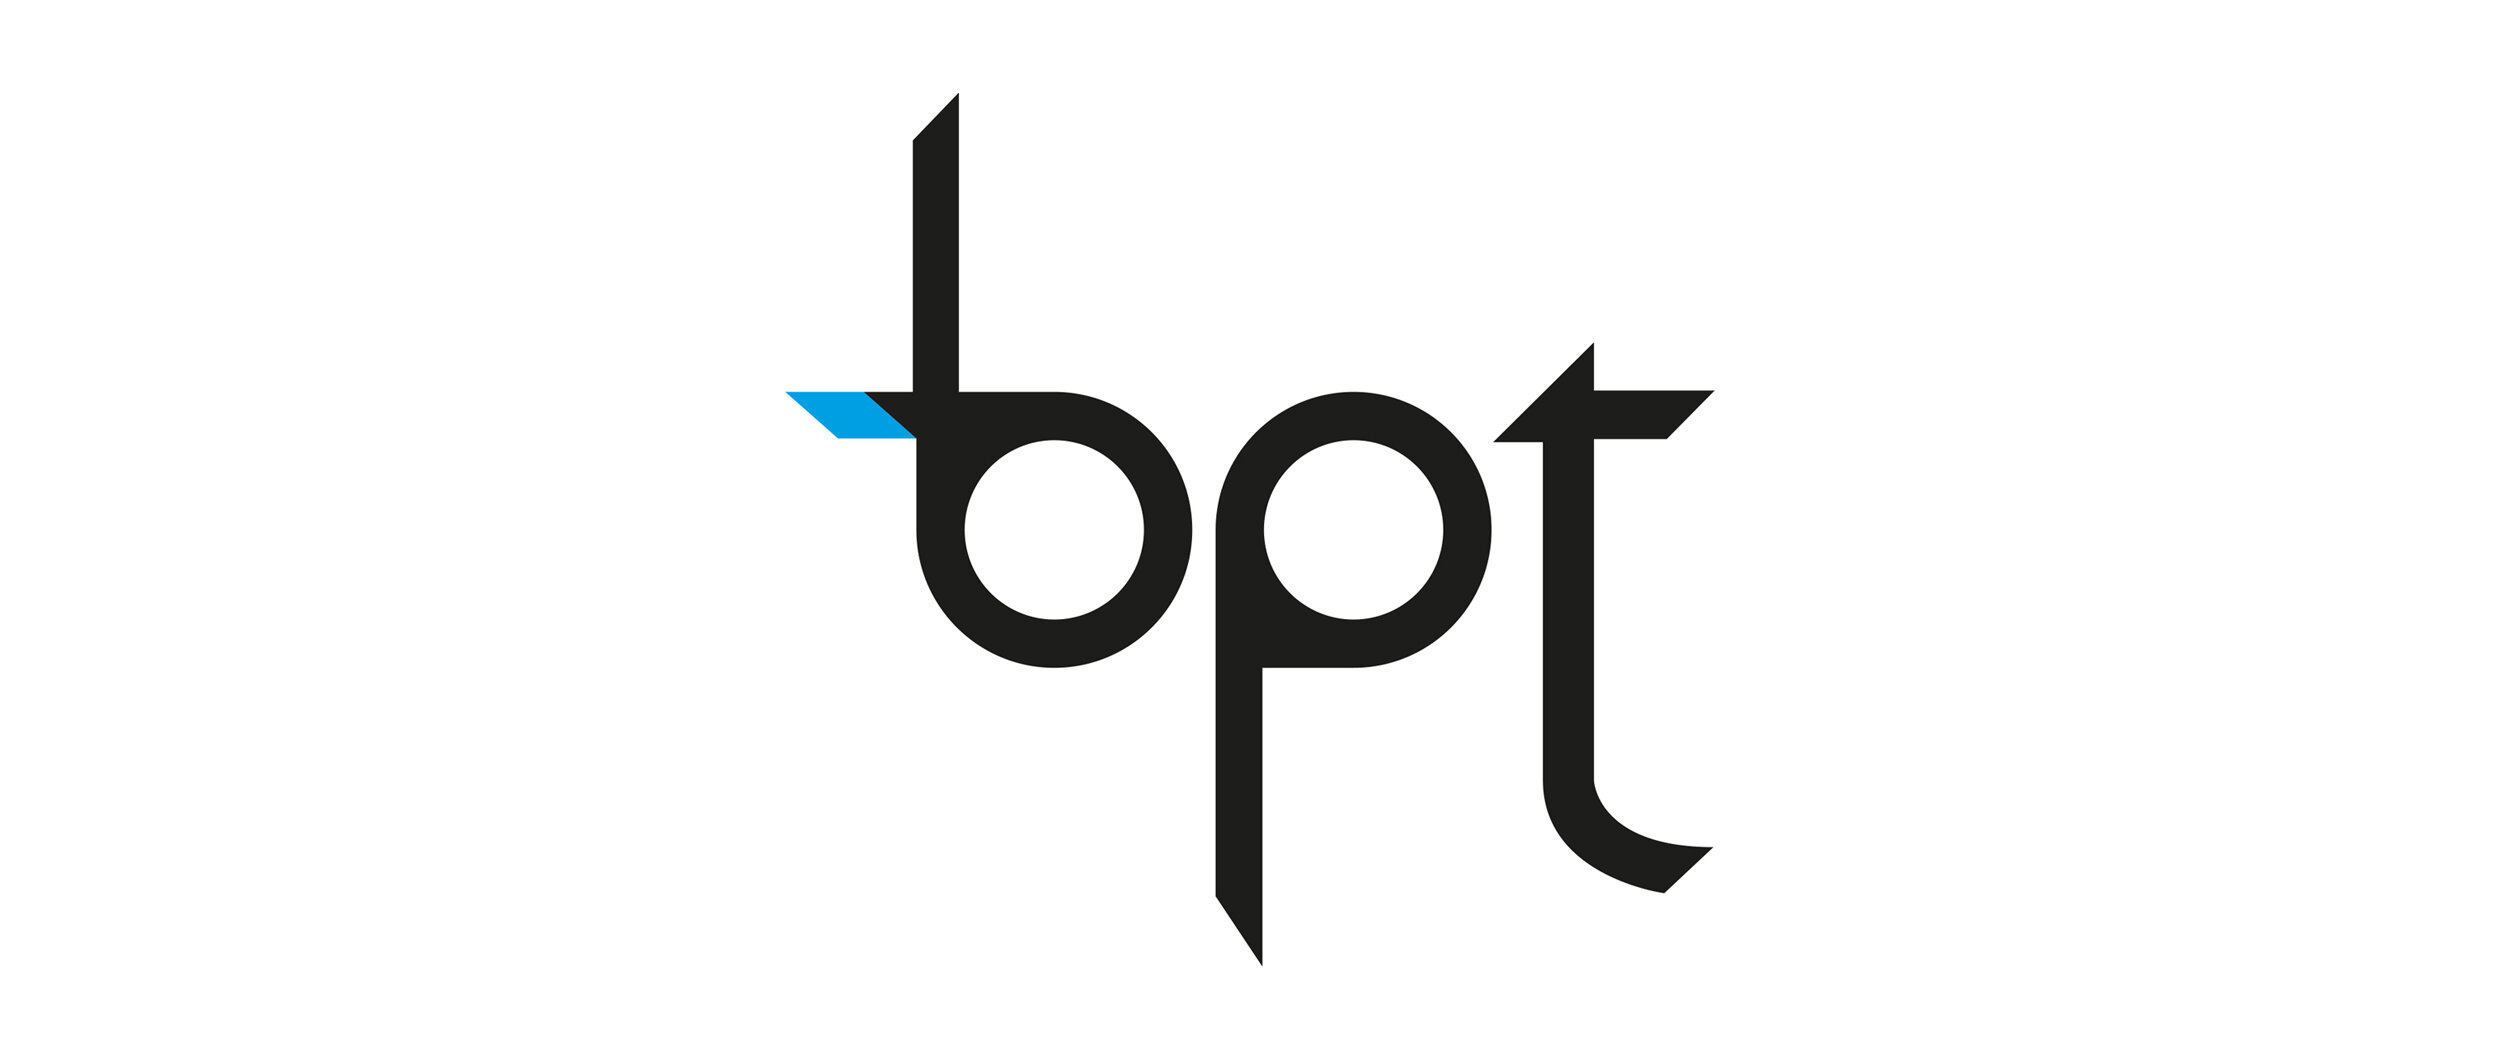 BPT logo.jpg